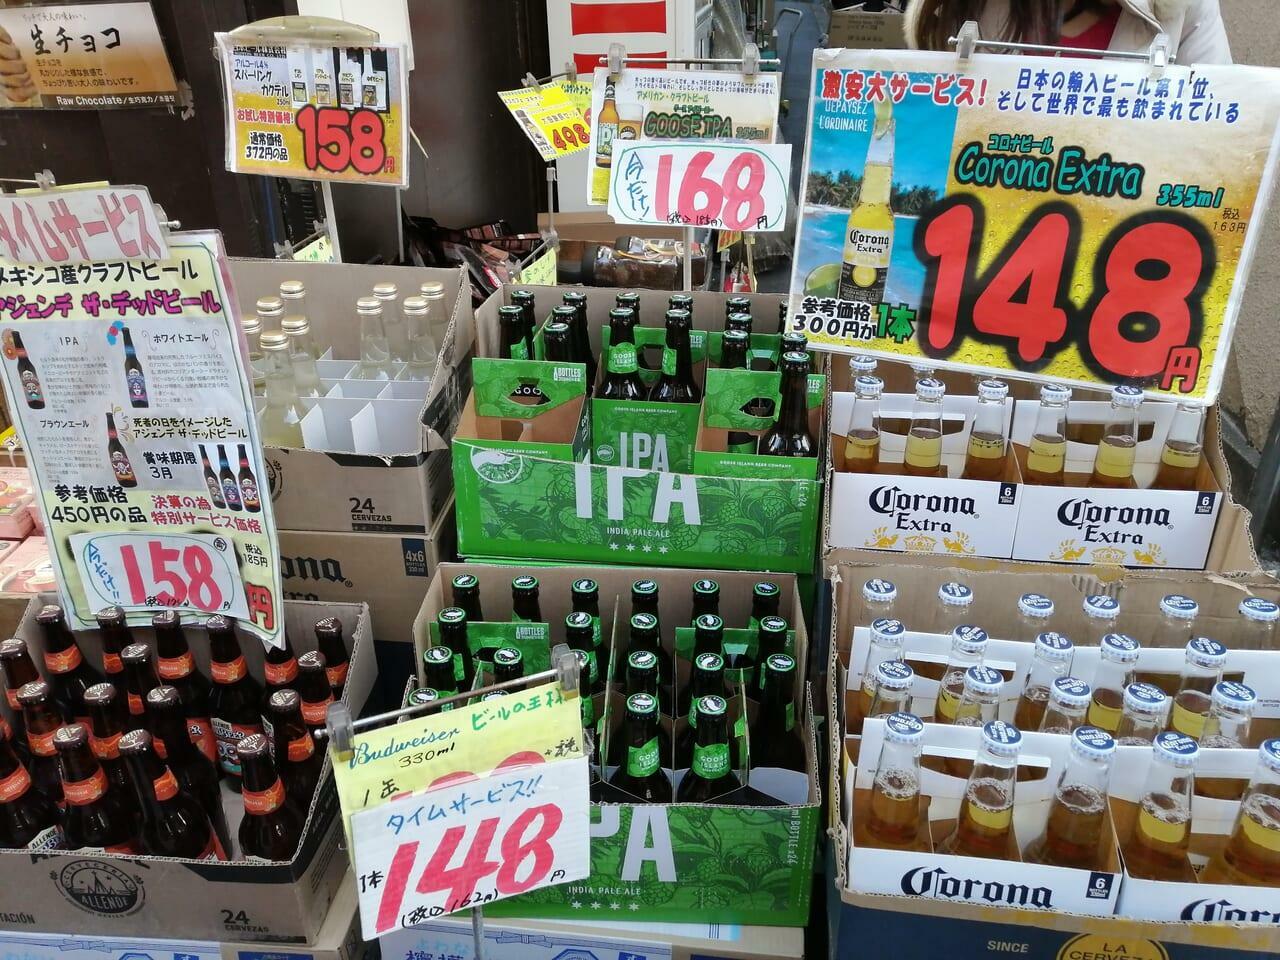 「コロナビール」が148円+税